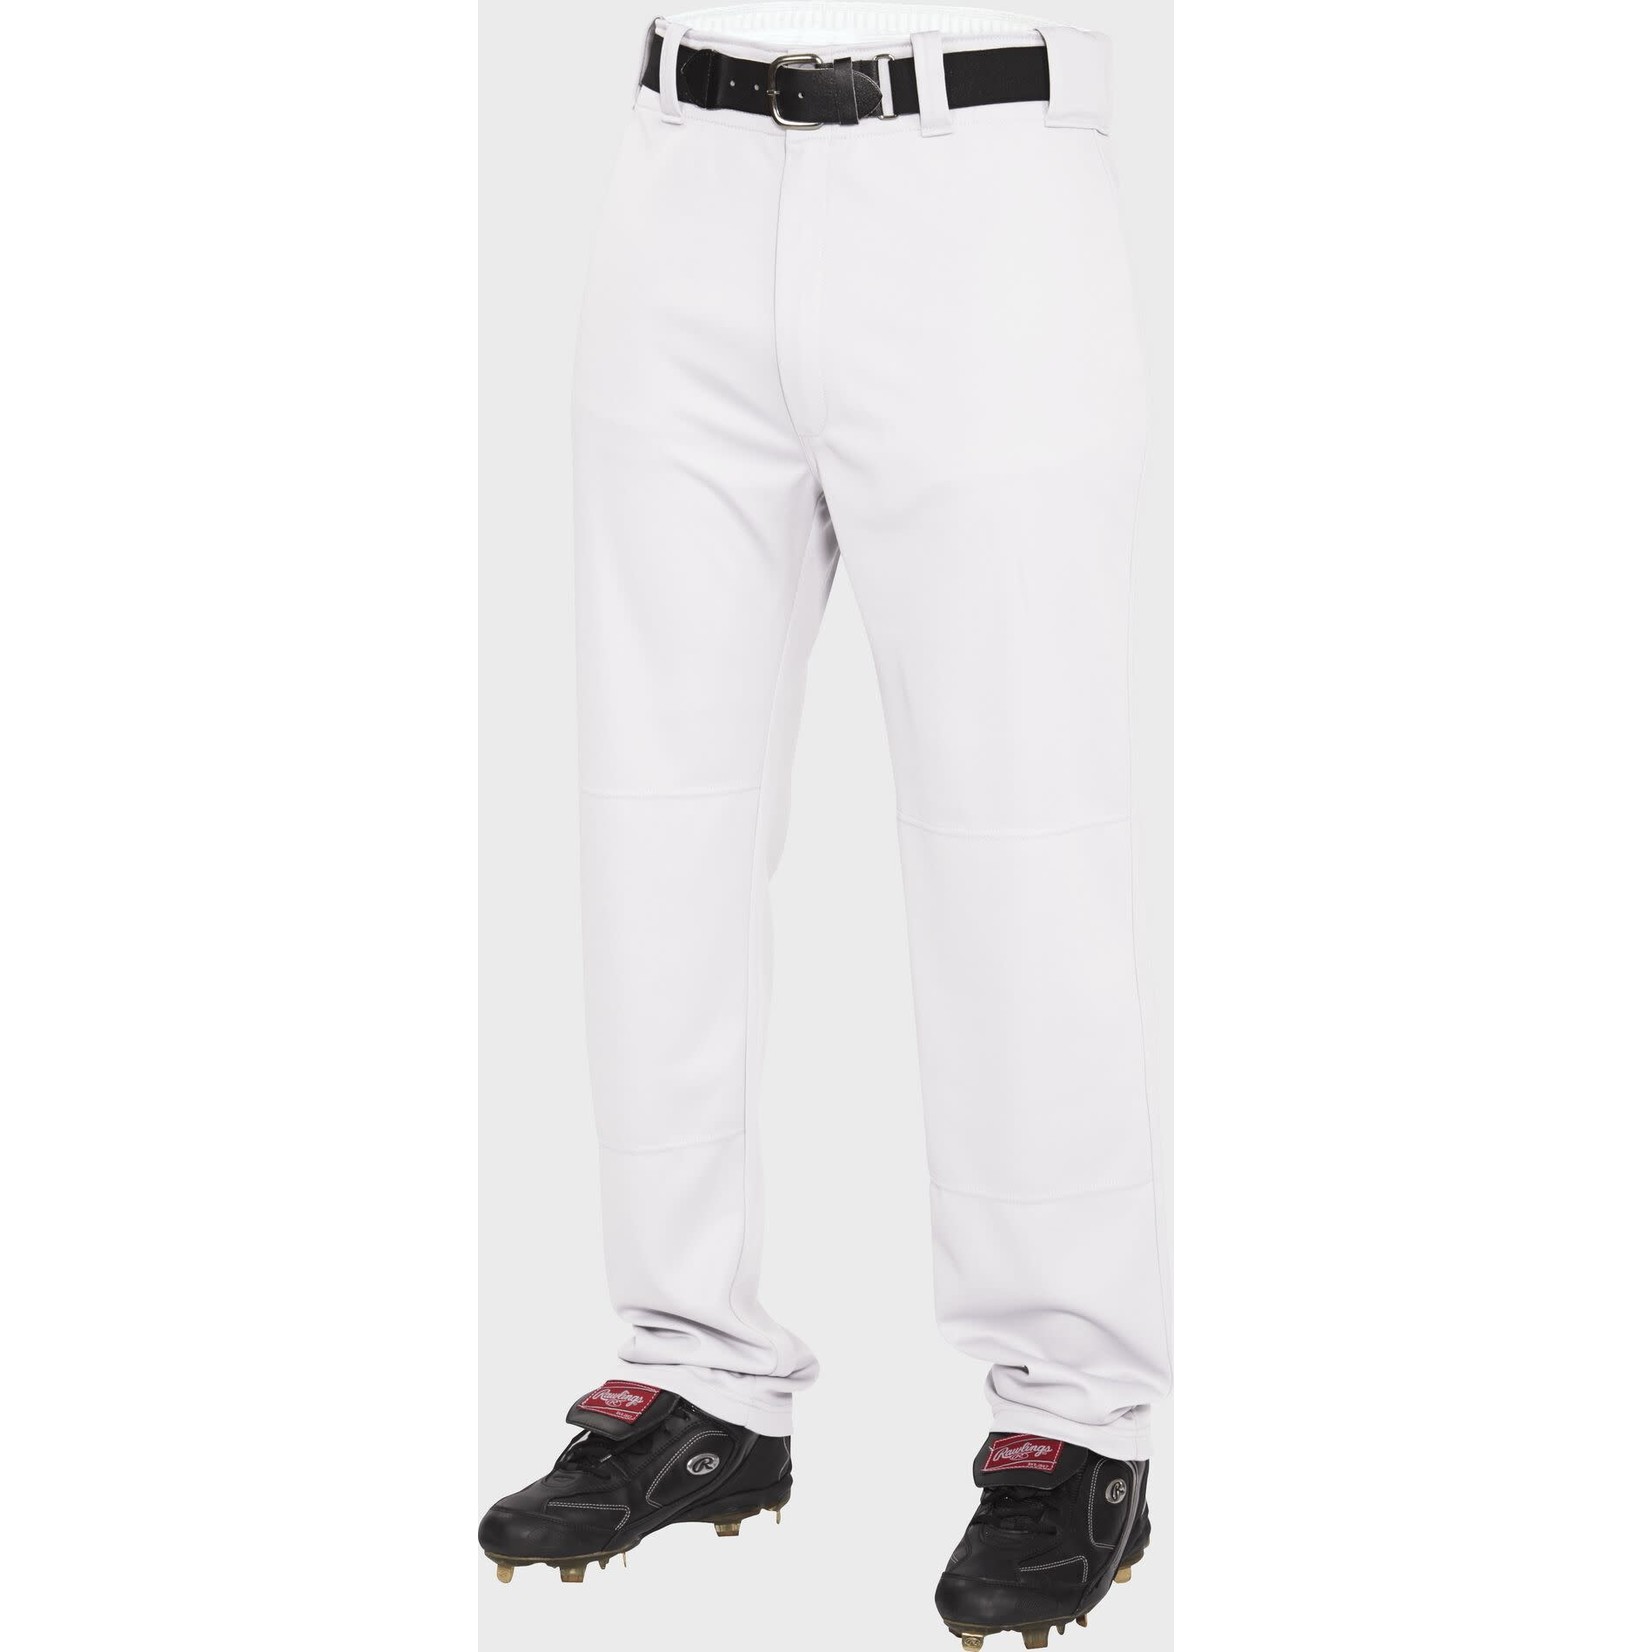 Rawlings Rawlings Baseball Pants, Semi-Relaxed, YBP31SR, Youth